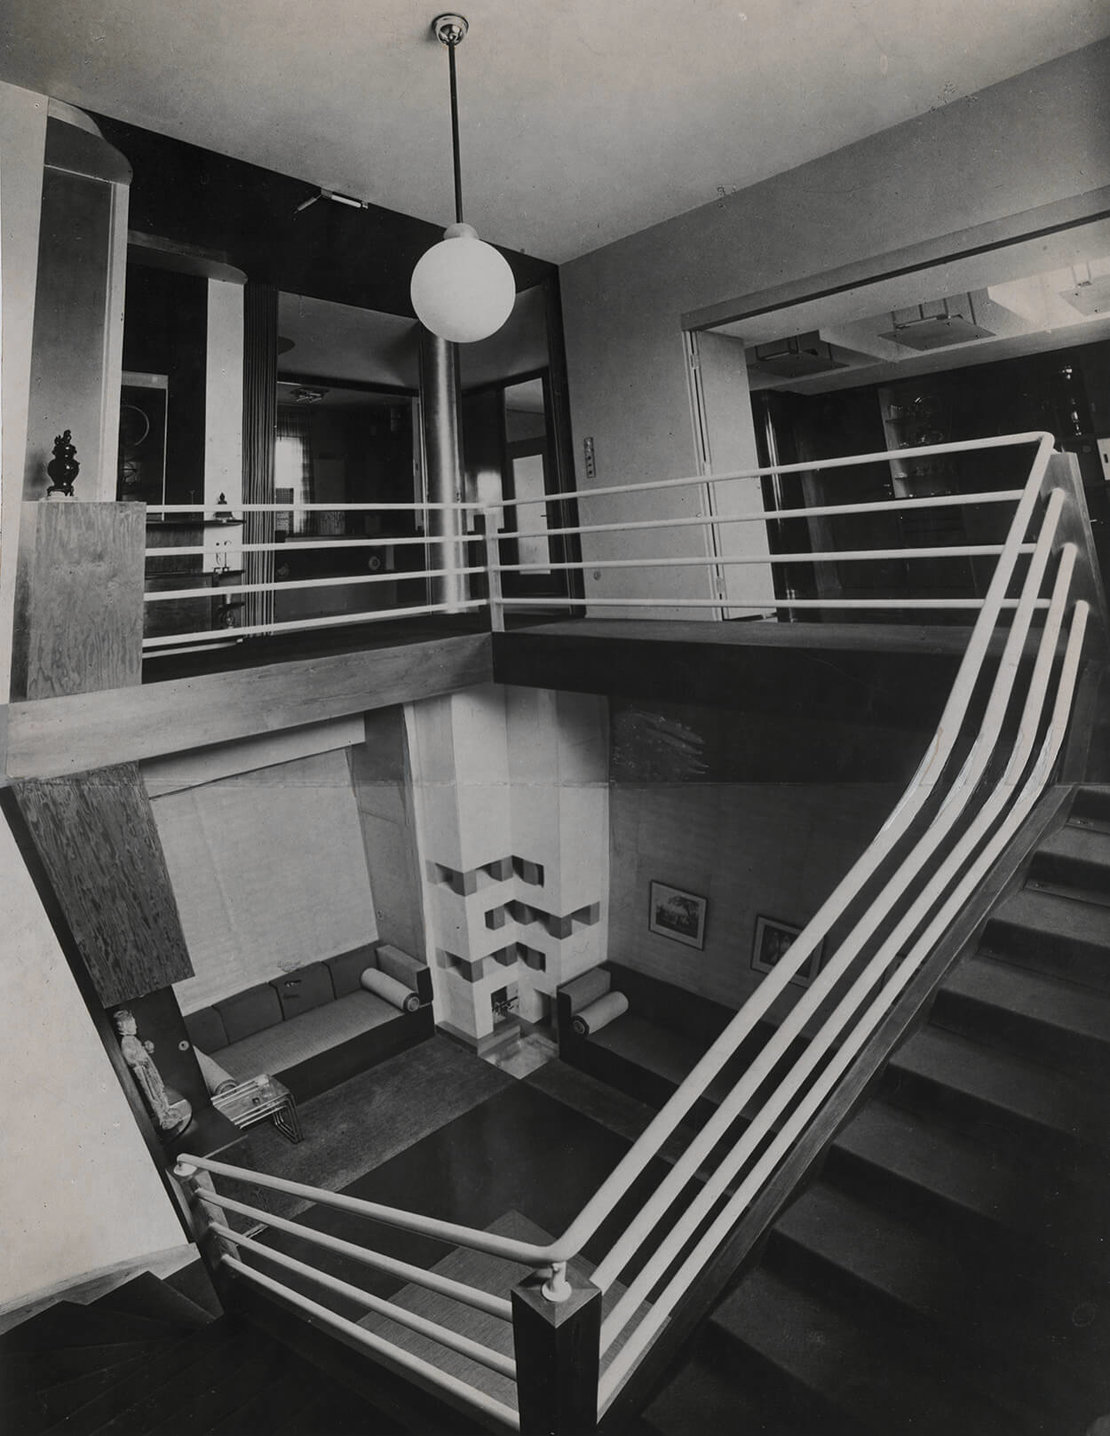 Umbau eines Einfamilienhauses in ein Zweifamilienhaus und Einrichtung für Franz Neumann, Reichenberg, 1930, Bauhaus-Archiv Berlin, © Daniela Singer 